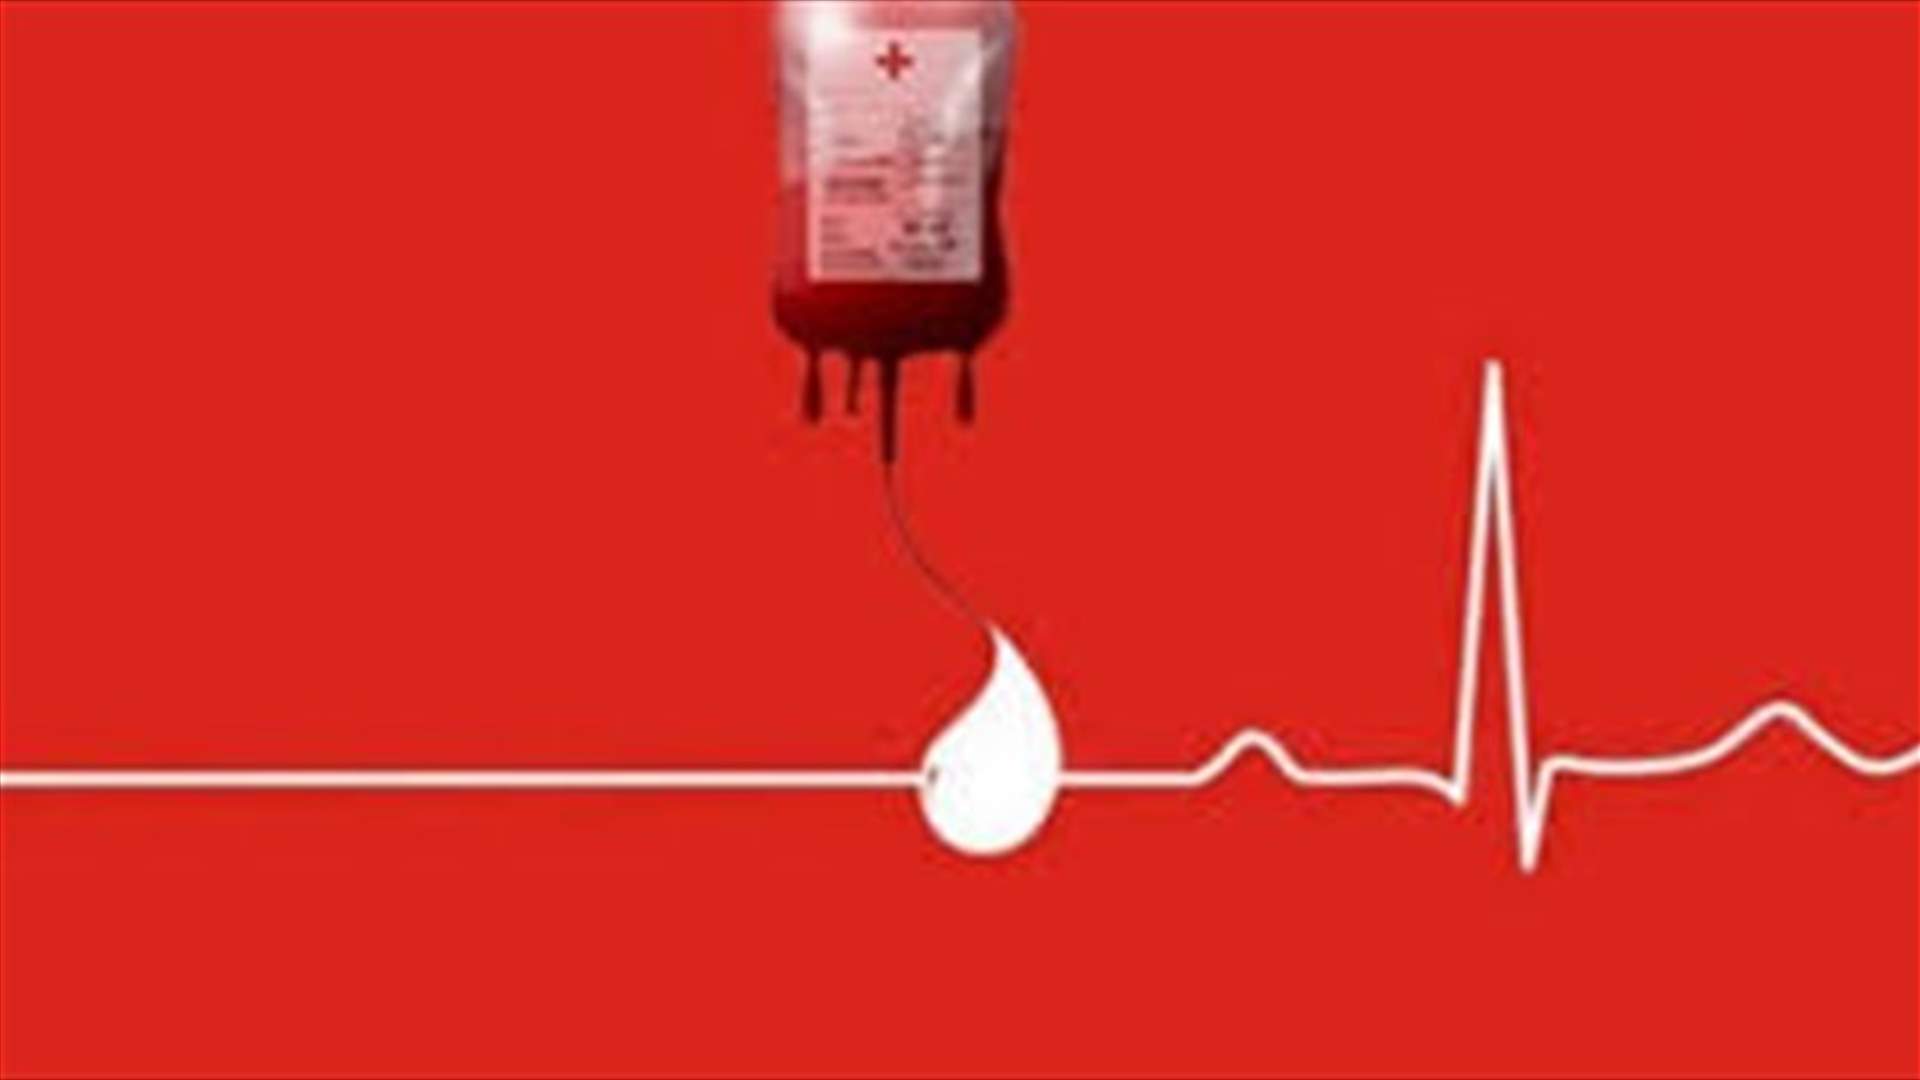 مريضة بحاجة ماسّة لوحدات دم من فئة O+ في مركز الصليب الأحمر الحمرا – سبيرز للتبرّع الرجاء الاتصال على الرقم: 03679210